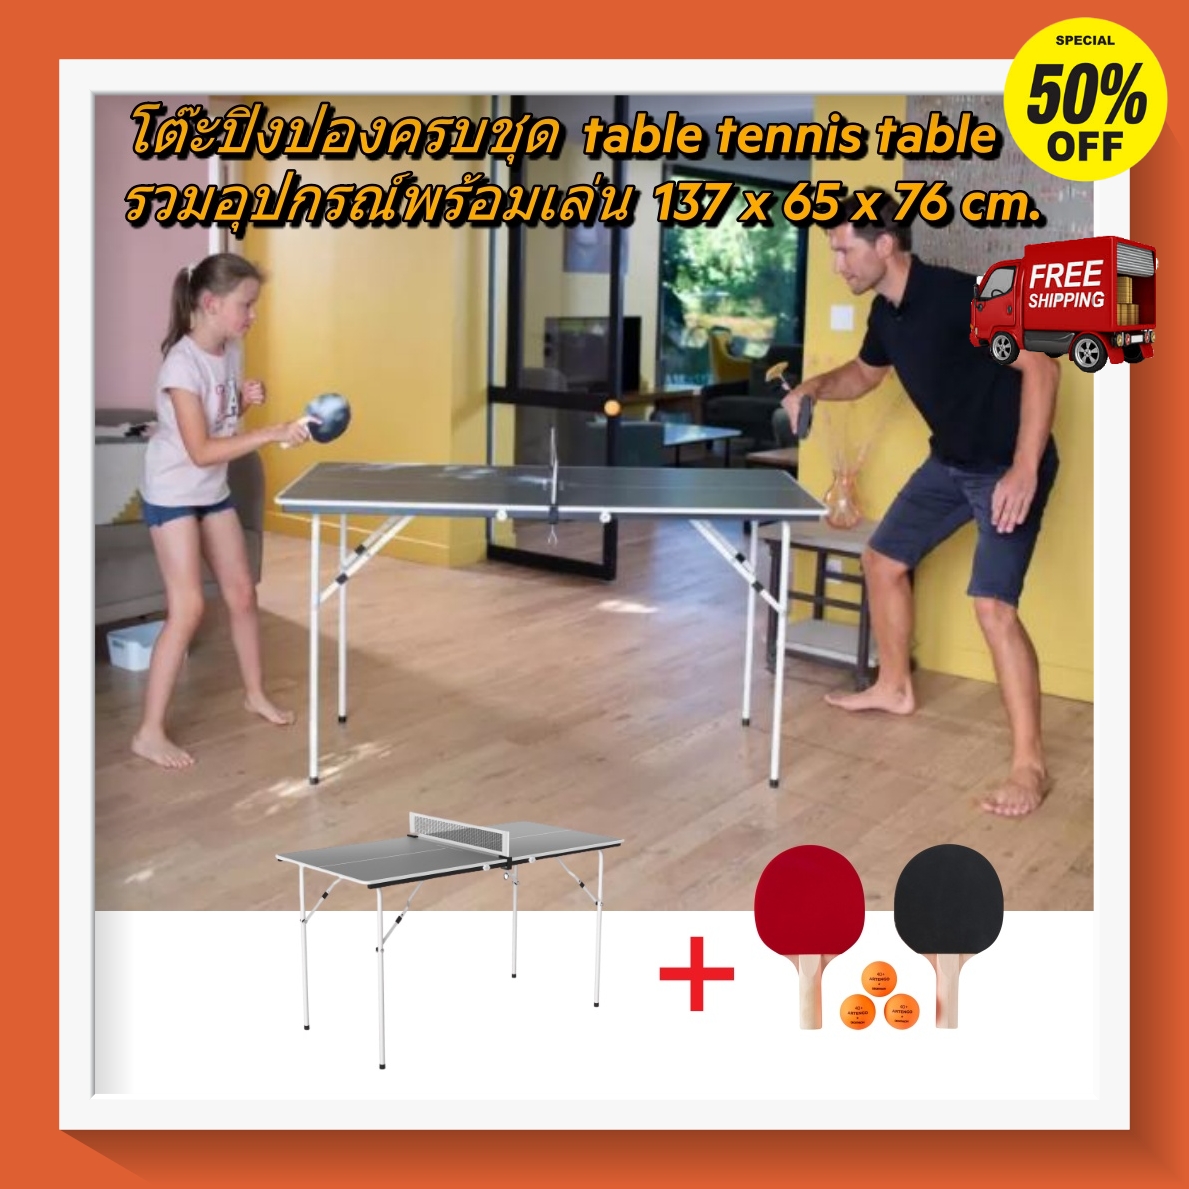 [ส่งฟรี ]โต๊ะปิงปองครบชุดขนาดเล็ก พับได้ ปิงปองฝึกสมาธิ 137x 65x76 ซม.รุ่น PPT 130 PPT 130 Small Indoor Table Tennis Table 137x 65x76 cm ไม้ปิงปอง โต๊ะปิงปอง เน็ตปิงปอง ลูกปิงปอง ออกกำลังกาย โปรโมชั่นสุดคุ้ม